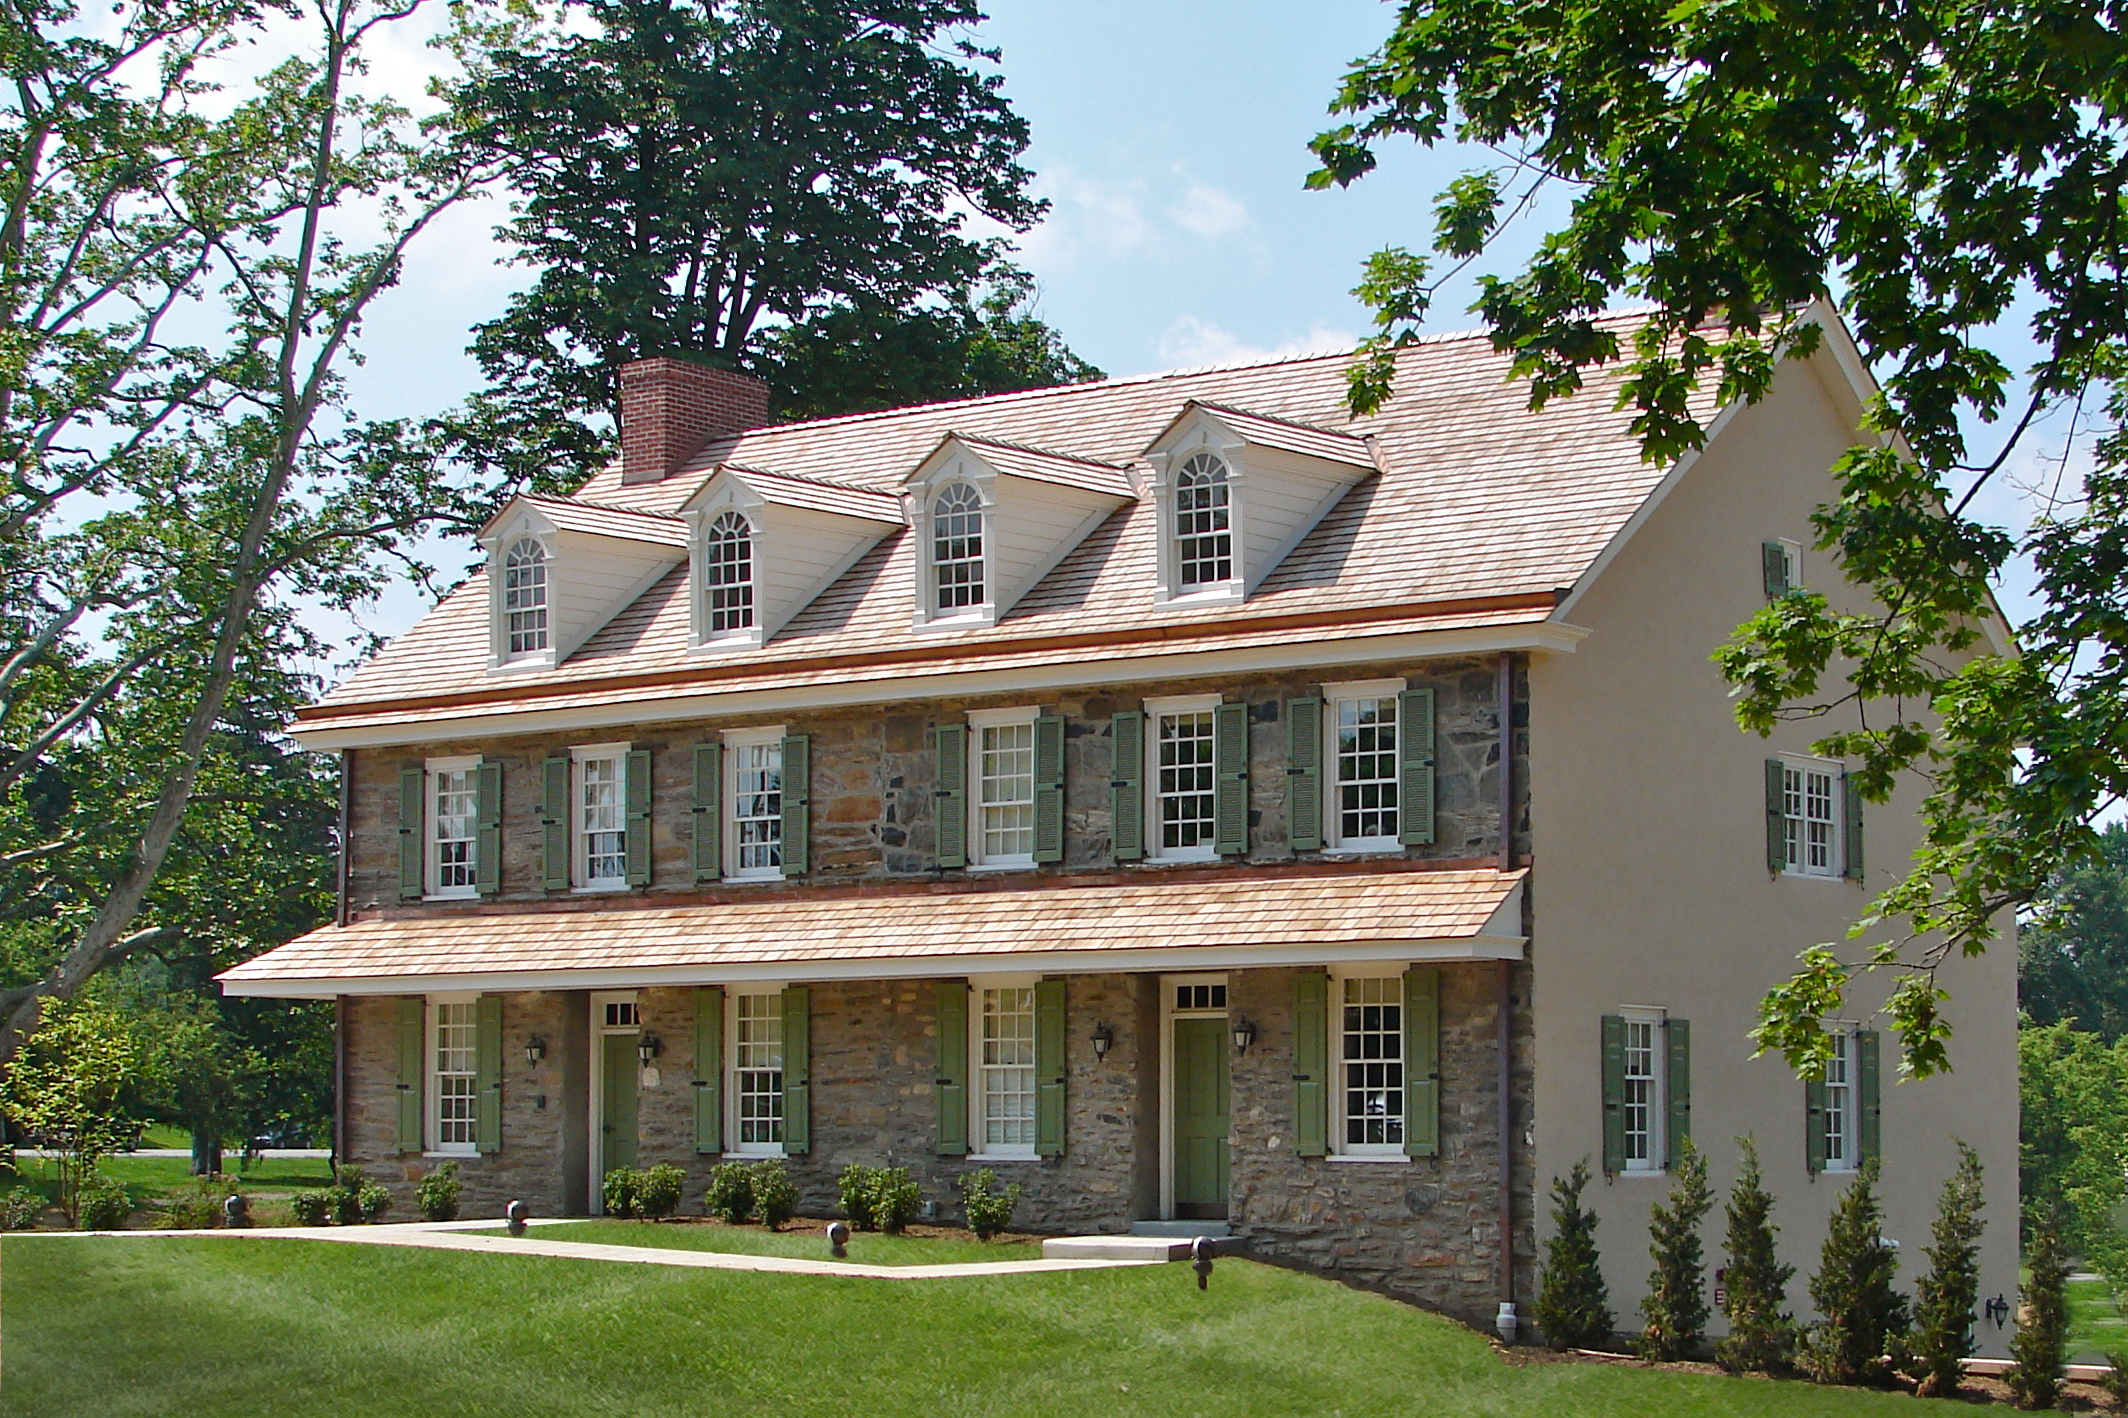 Casa de Steve Byrne em Freehold, New Jersey, United States